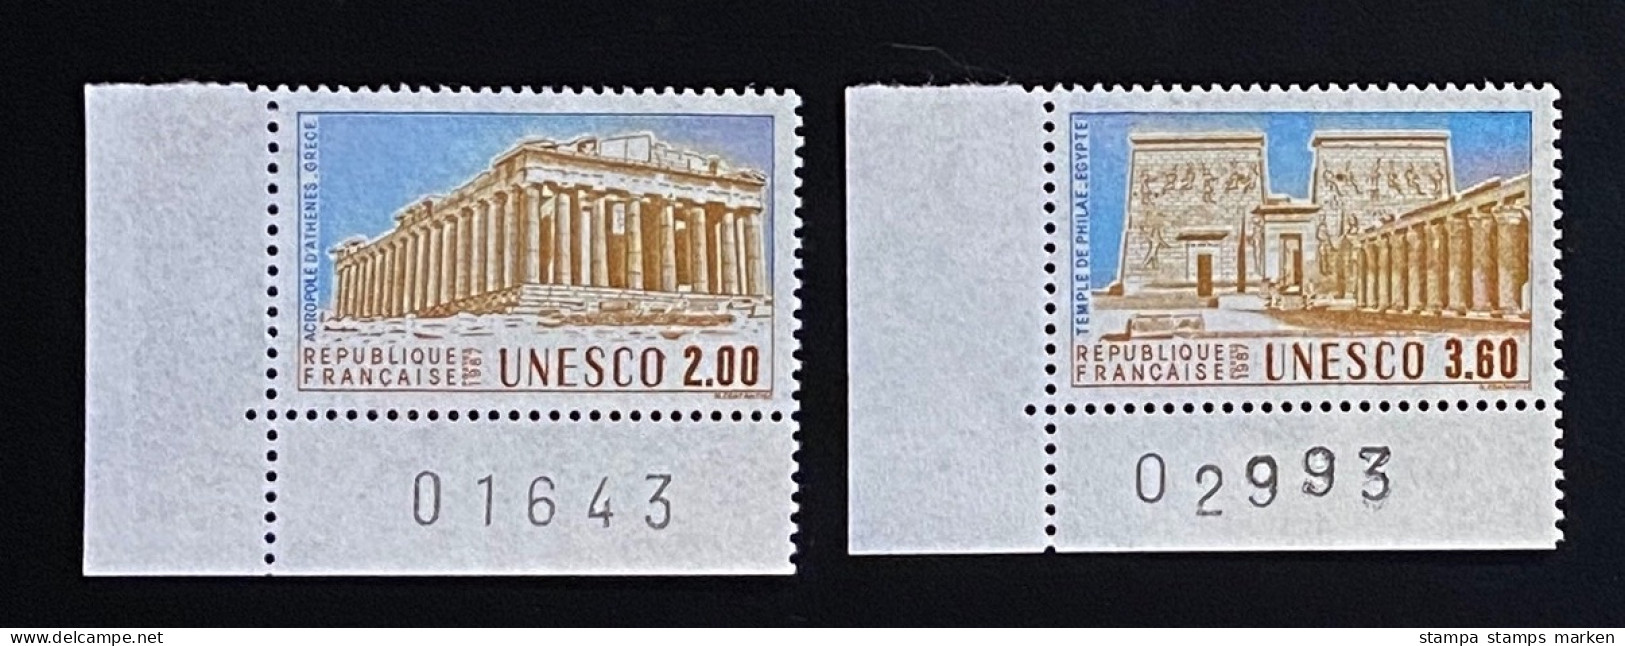 Frankreich 1987 Dienstmarken UNESCO Welterbe Mi. 39 - 40 Postfrisch/** MNH Bogenecke - Used